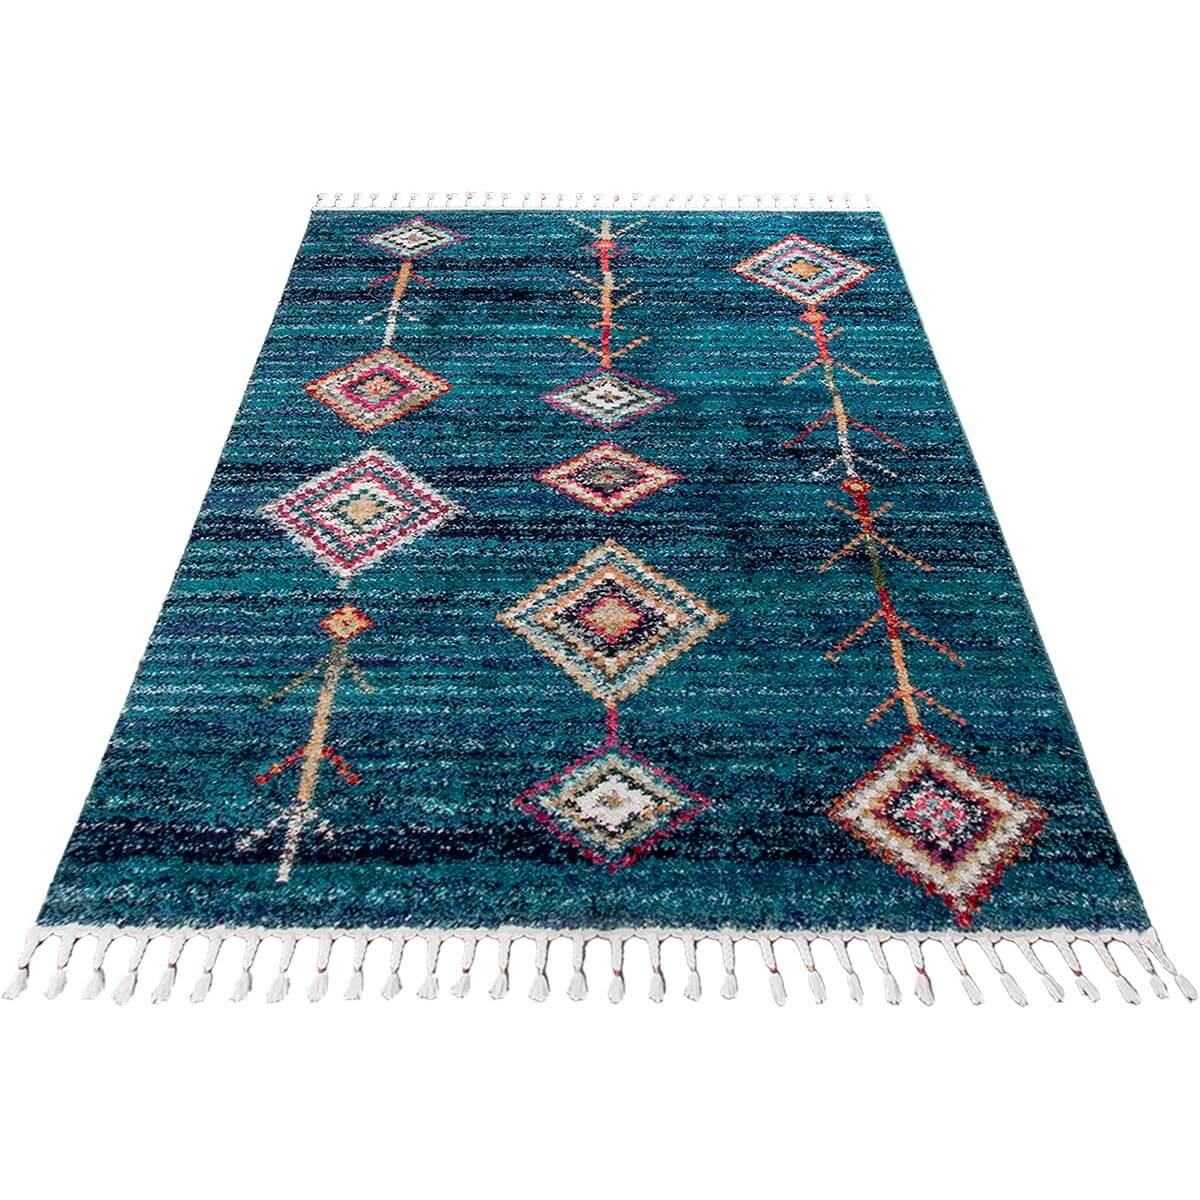 שטיח מיקונוס 01 כחול עם פרנזים | השטיח האדום